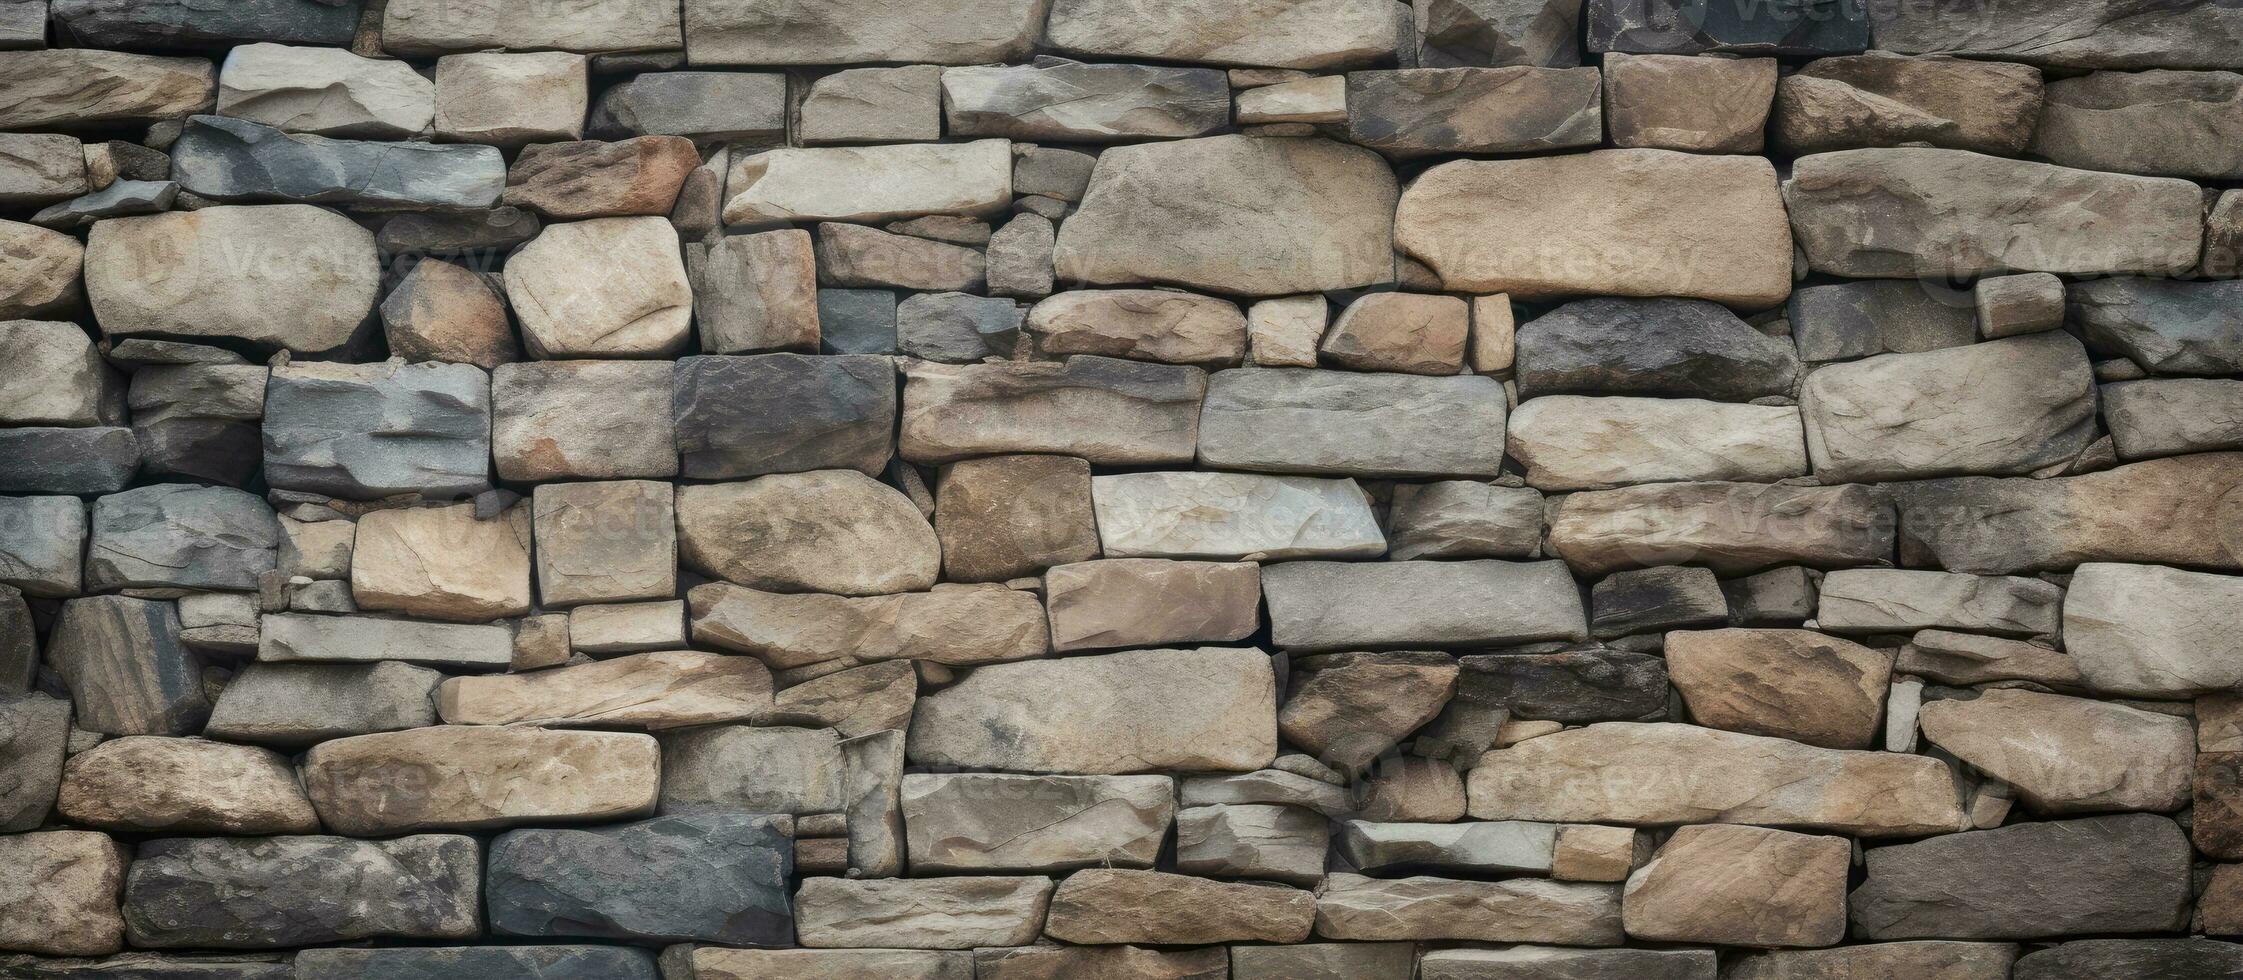 Hintergrund von ein Mauer gemacht von Steine foto